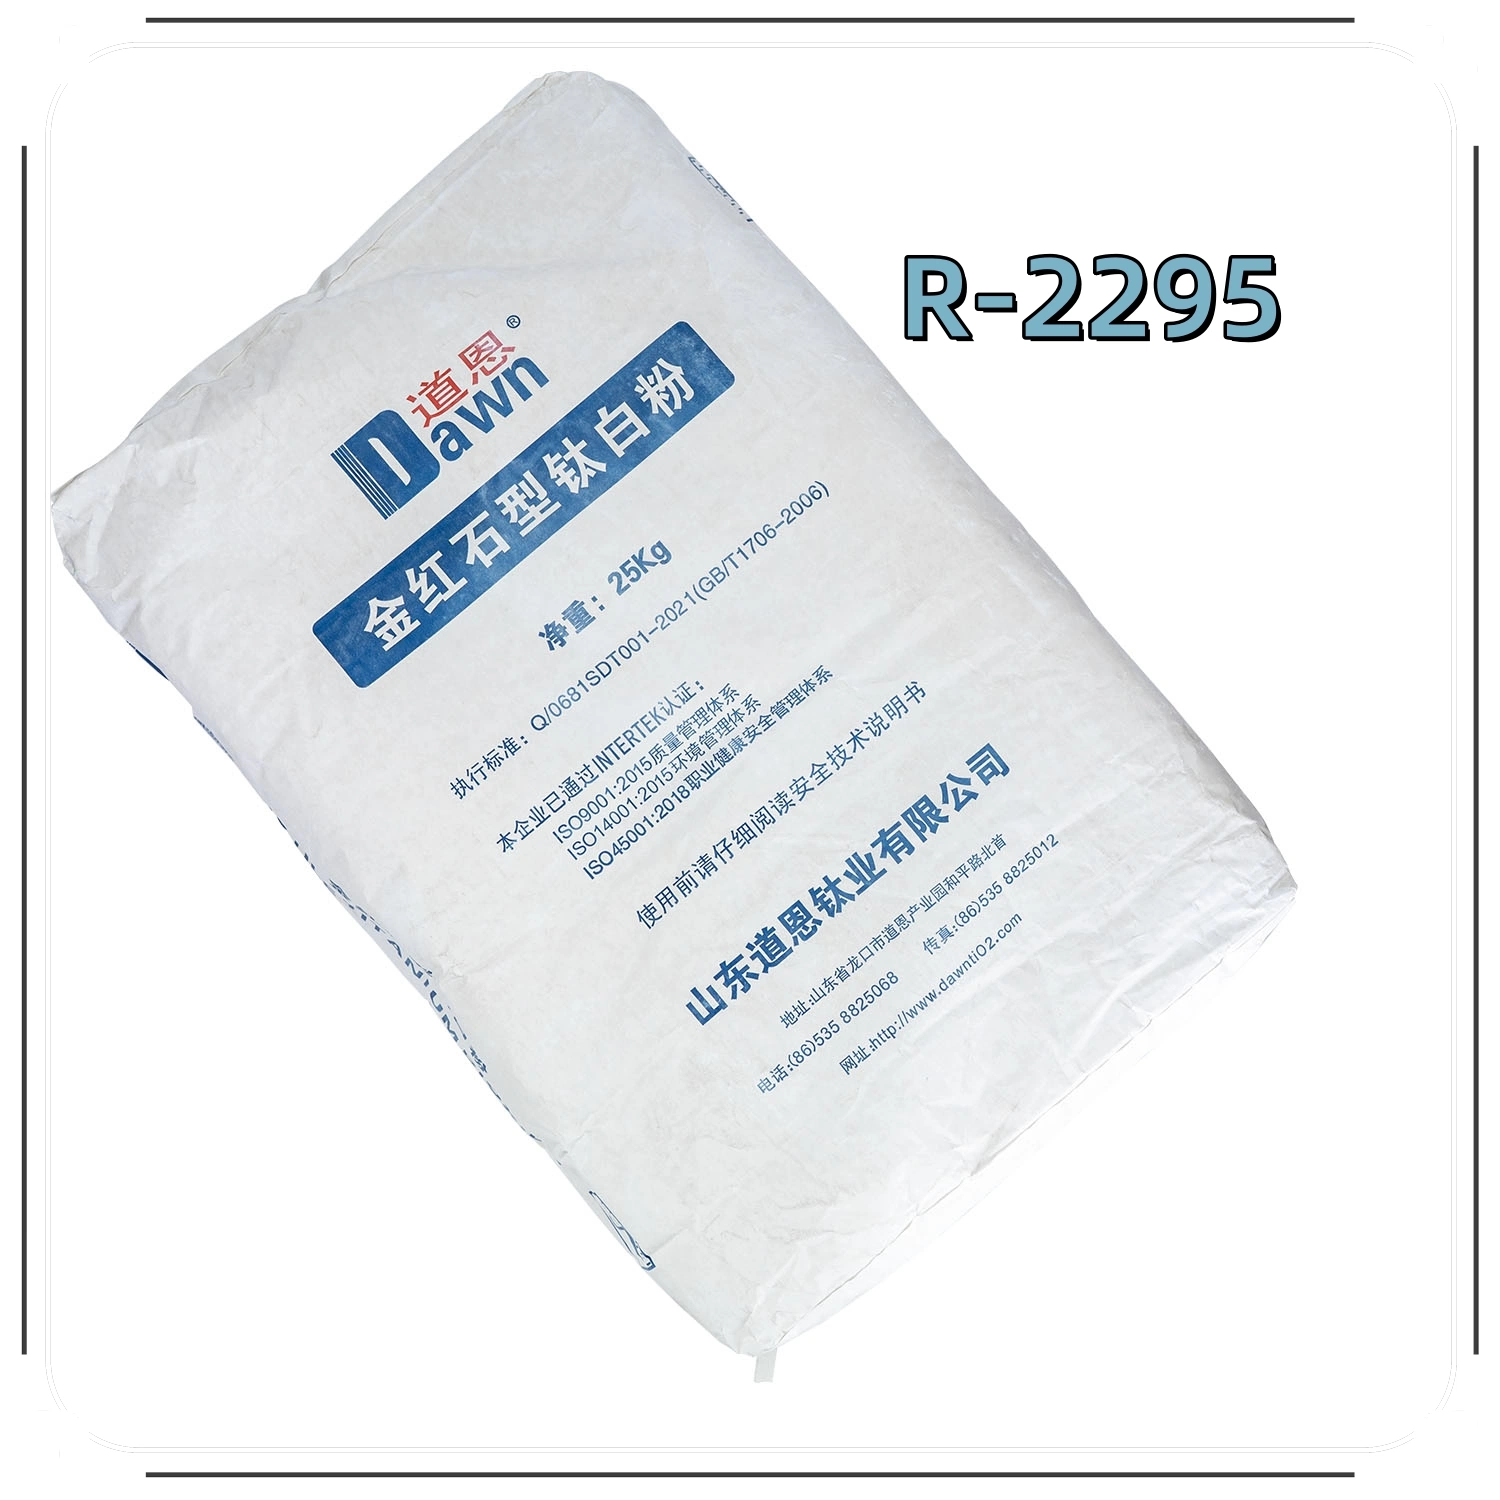 La estabilidad de recubrimiento de TiO2 el dióxido de titanio Alba R-2295 normalmente se utiliza en plásticos, Masterbatches, caucho, pintura, tinta, papel, revestimientos